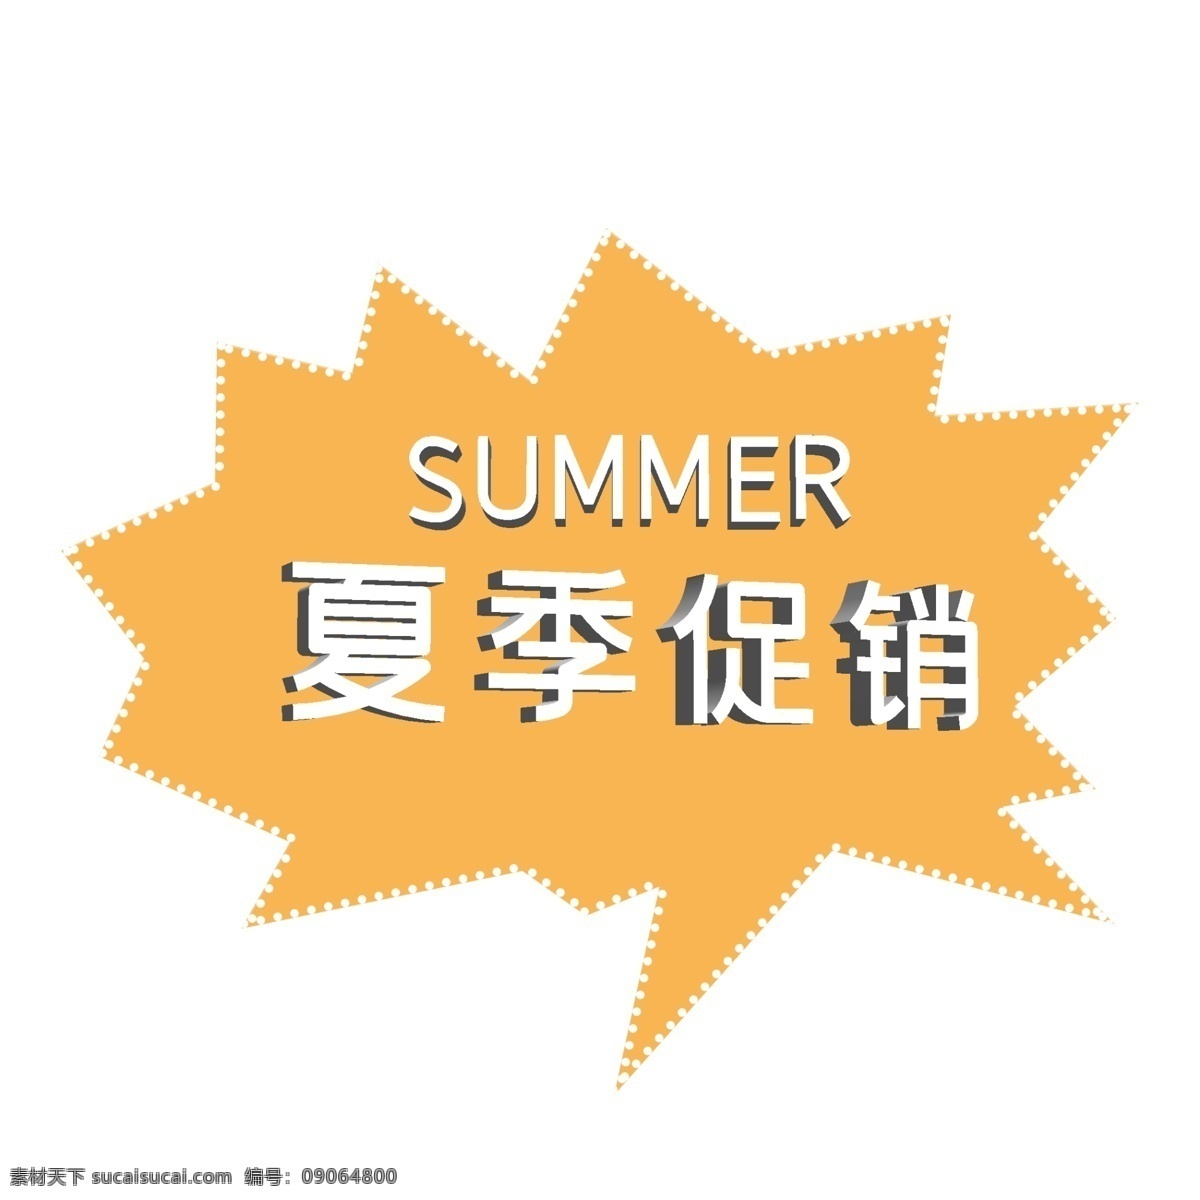 夏季促销标签 立体字 夏季 促销标签 优惠活动